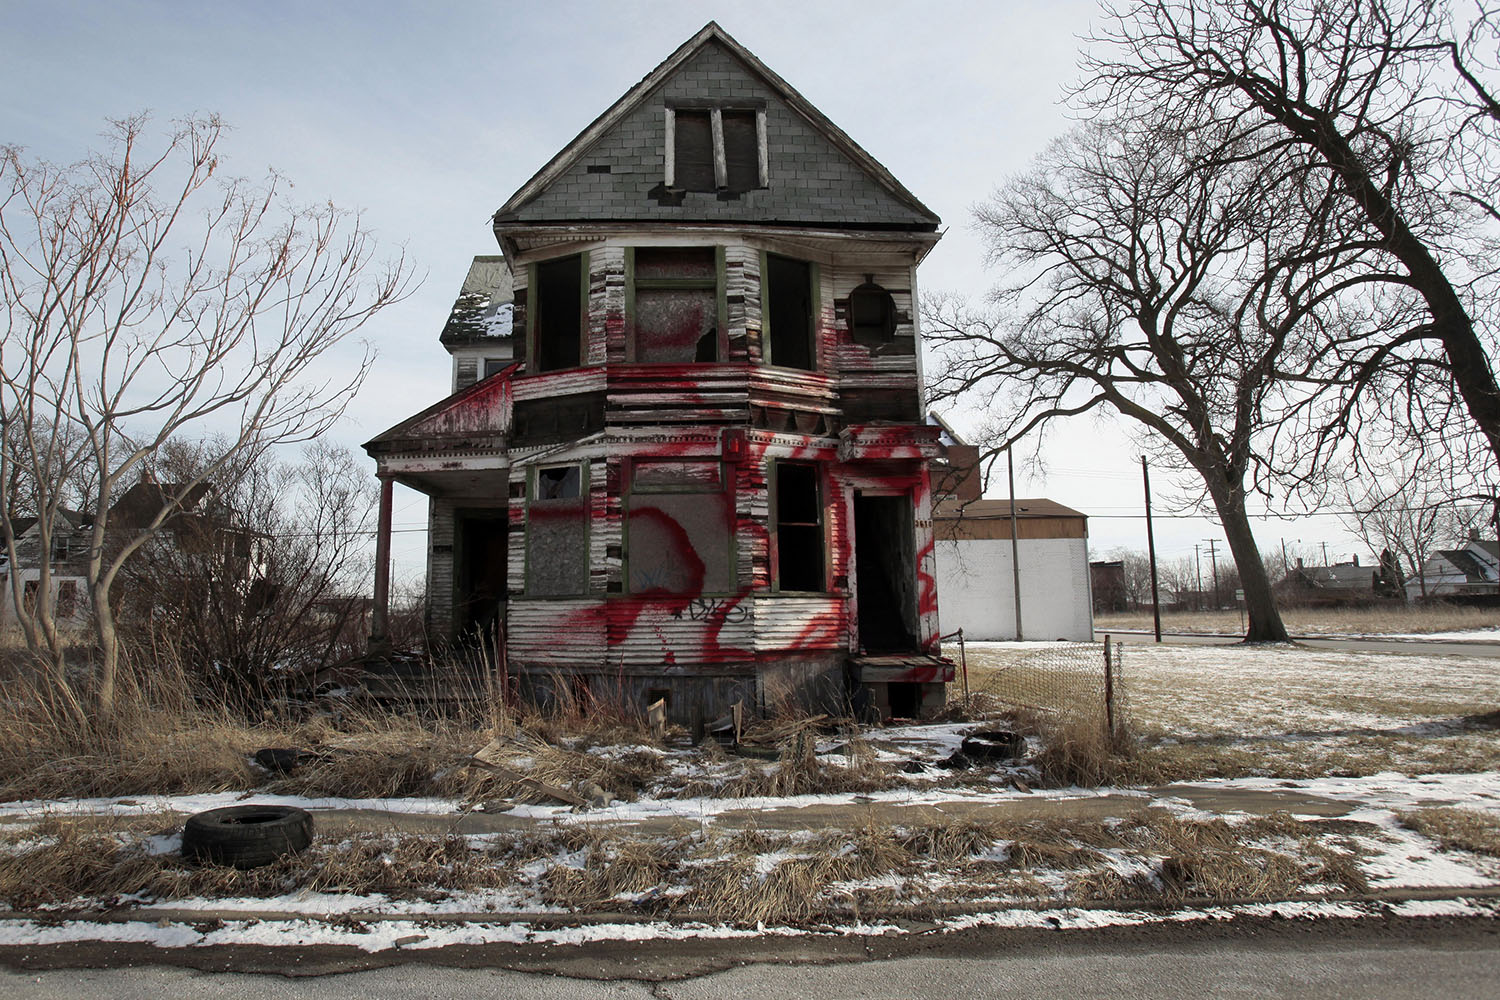 Especial EEUU. El descenso de población ha dejado decenas de miles de casas abandonadas en Detroit